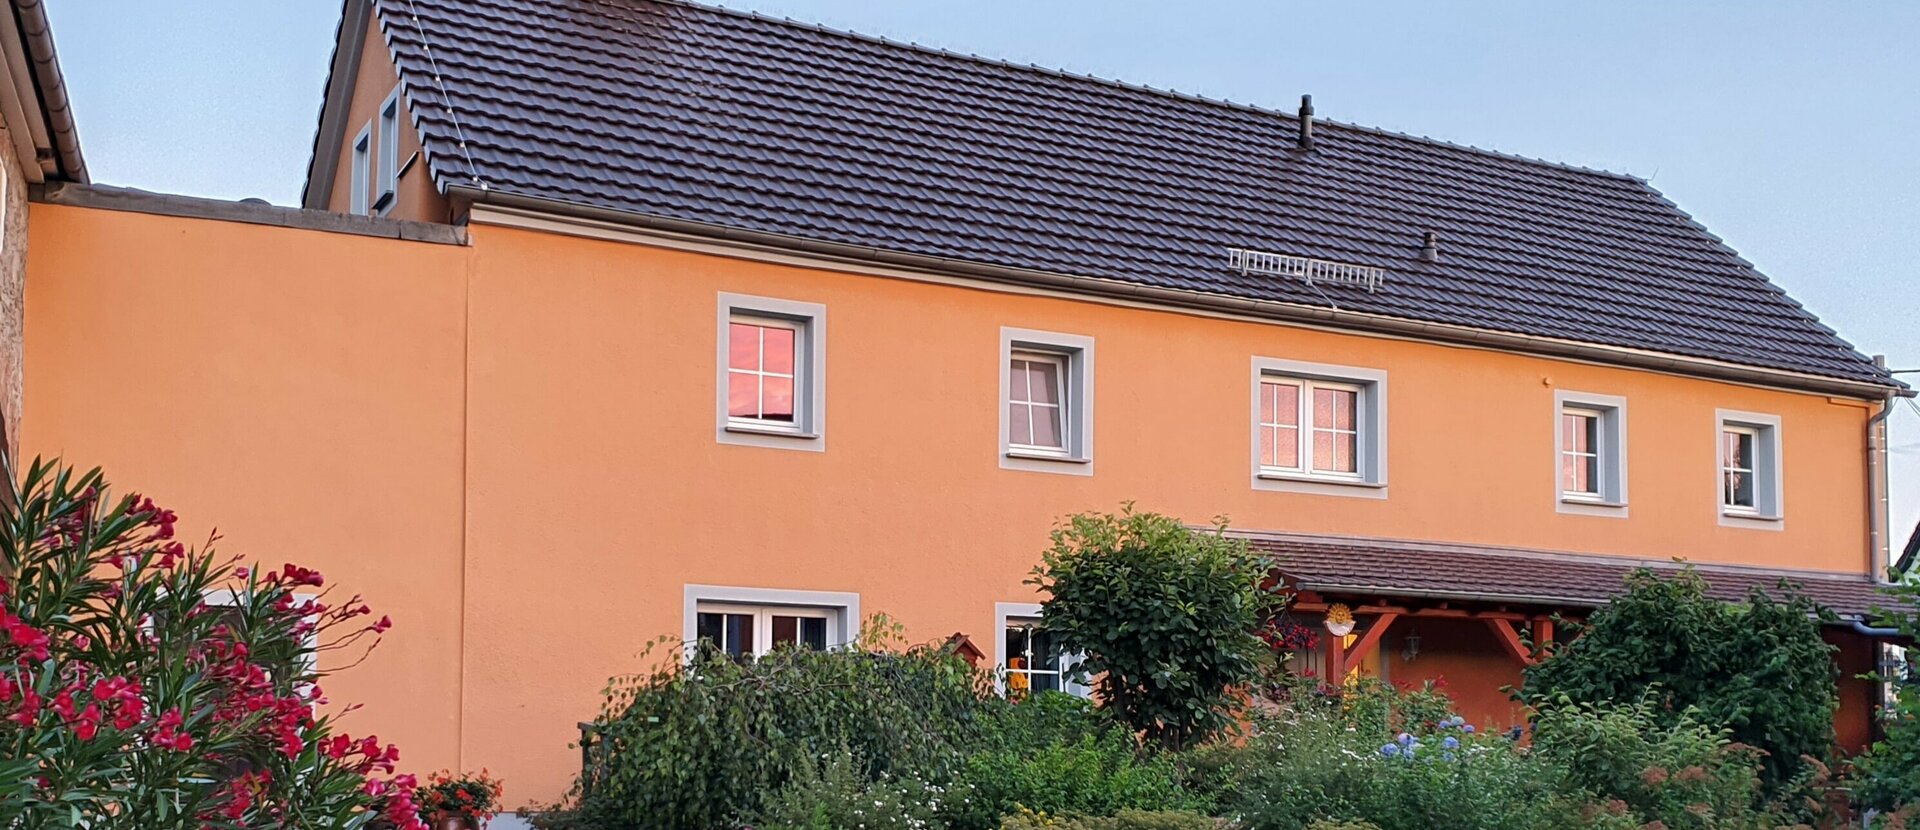 Urlaub im Landhaus Oberlausitz bei Bautzen Das komfortable und gemütliche Ferienhaus für Ihren Urlaub